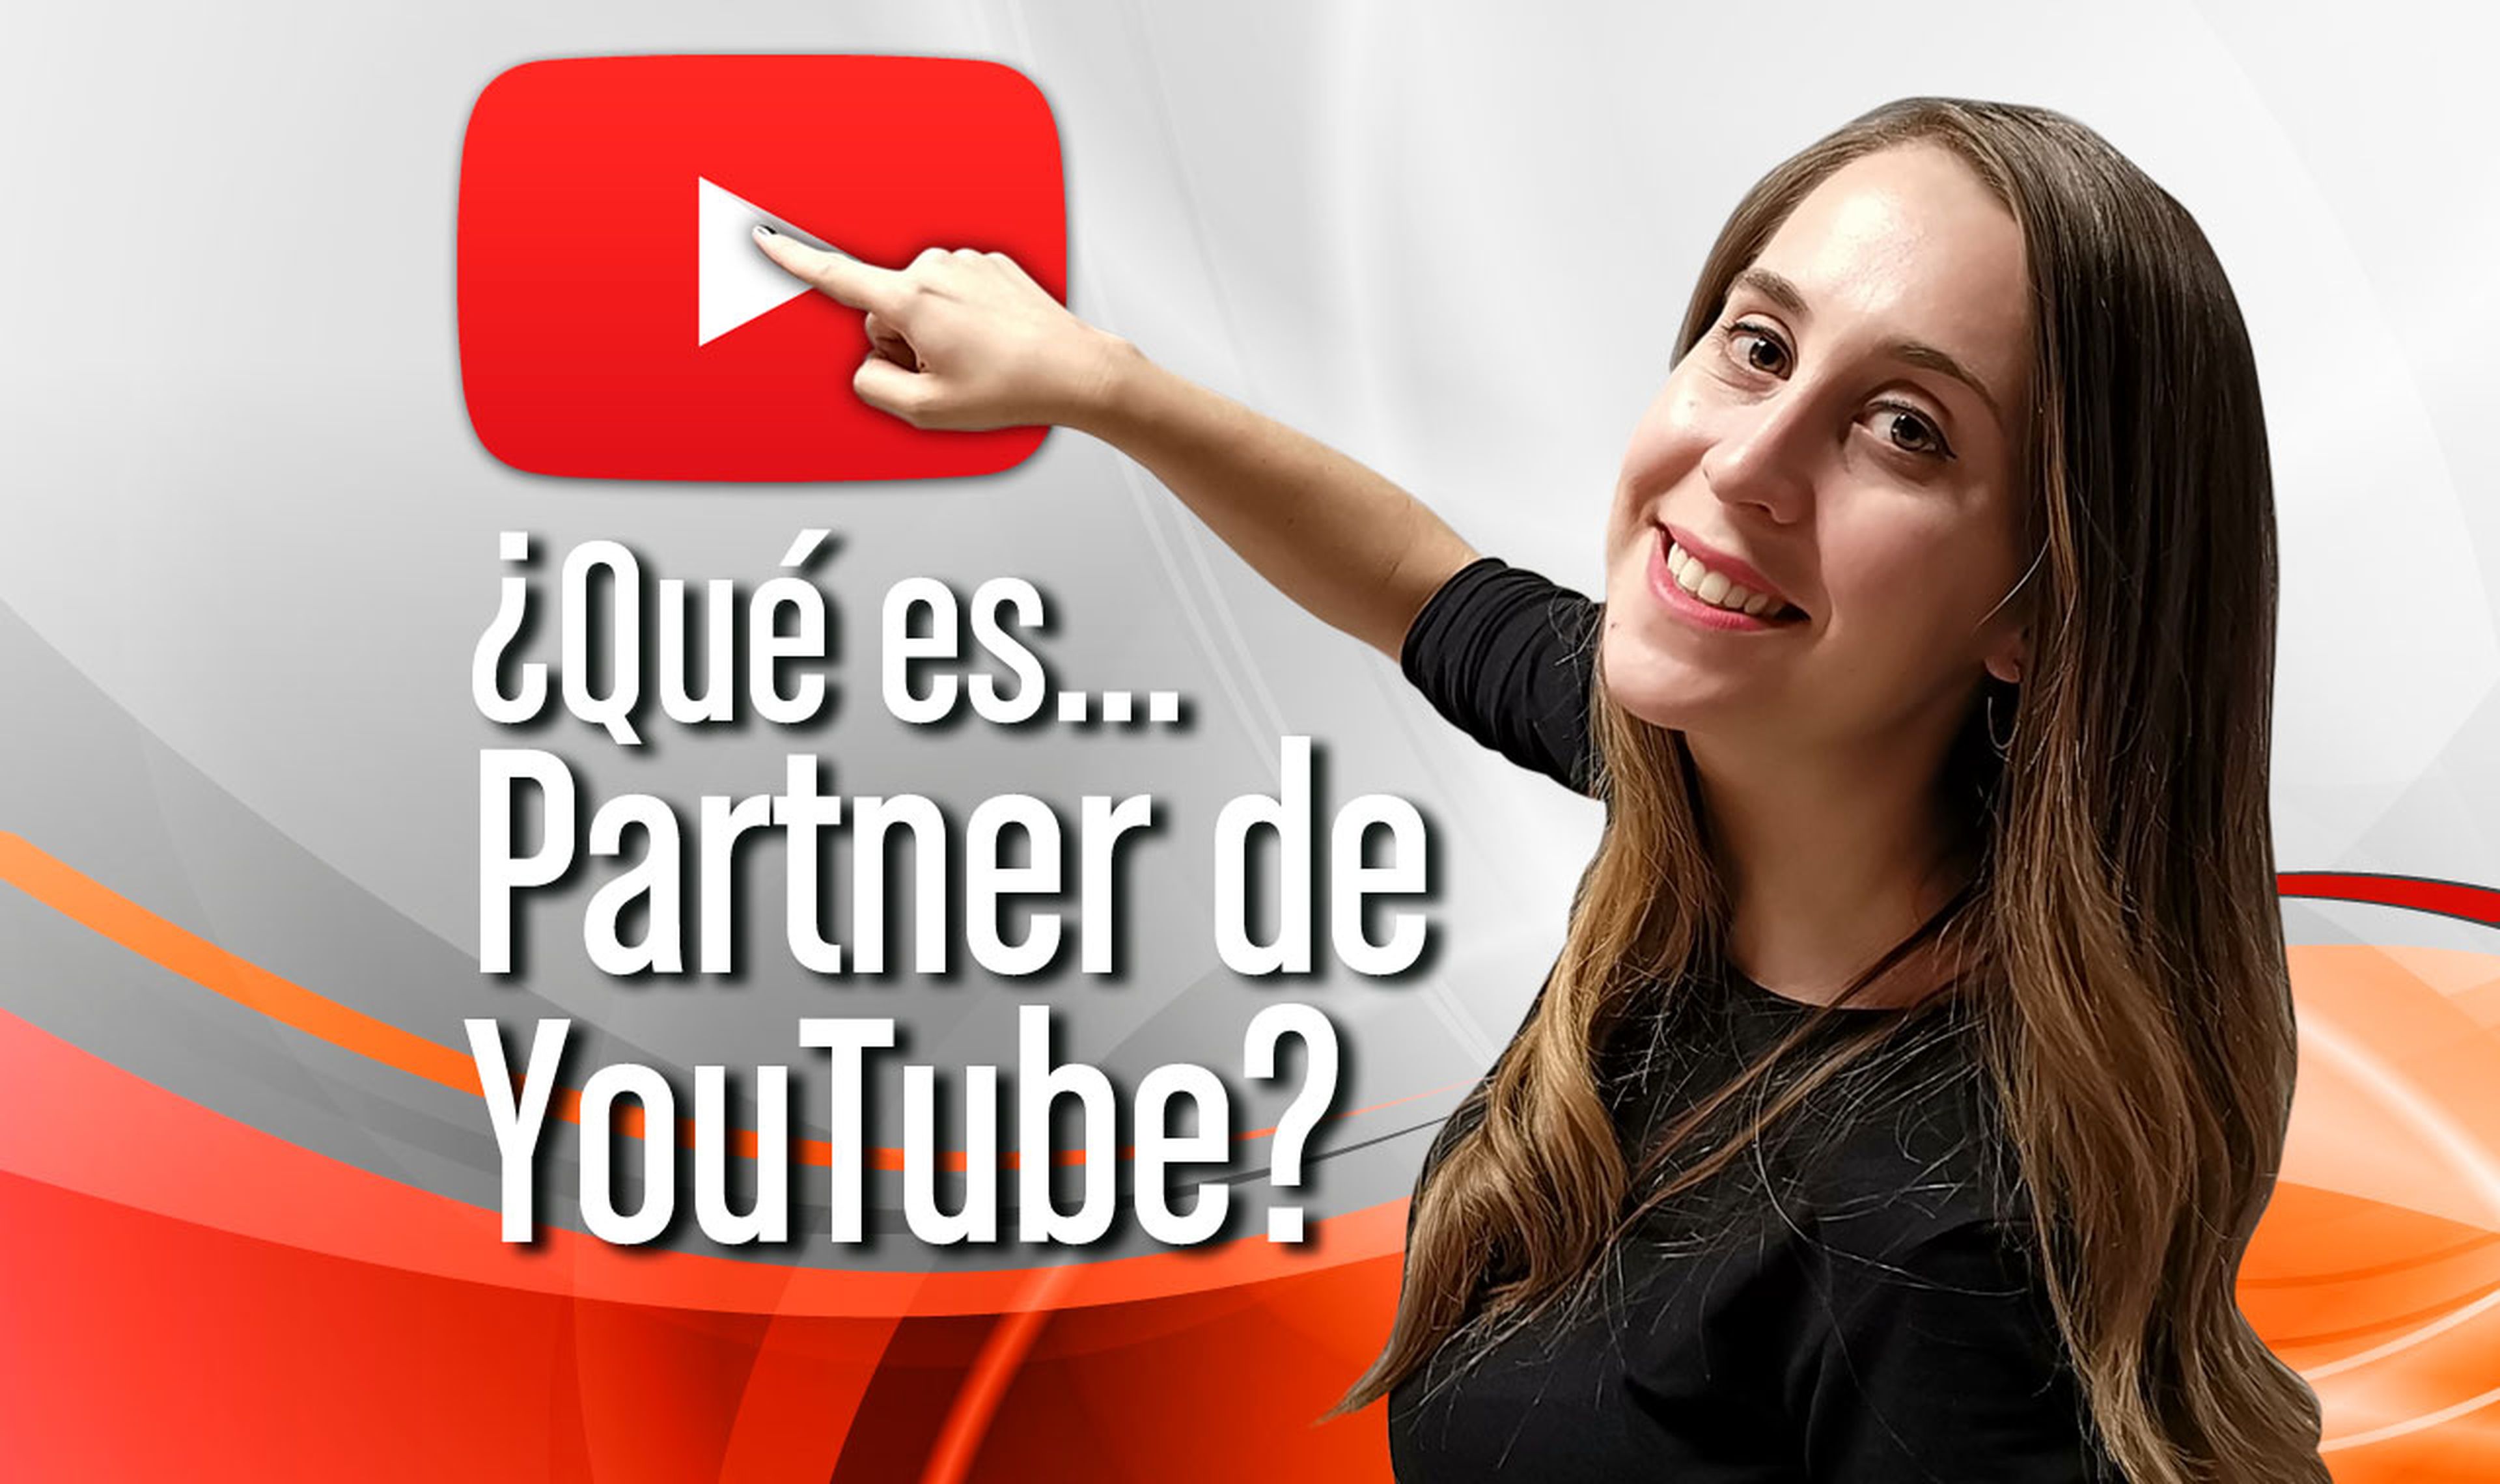 ¿Qué es Partner de YouTube?